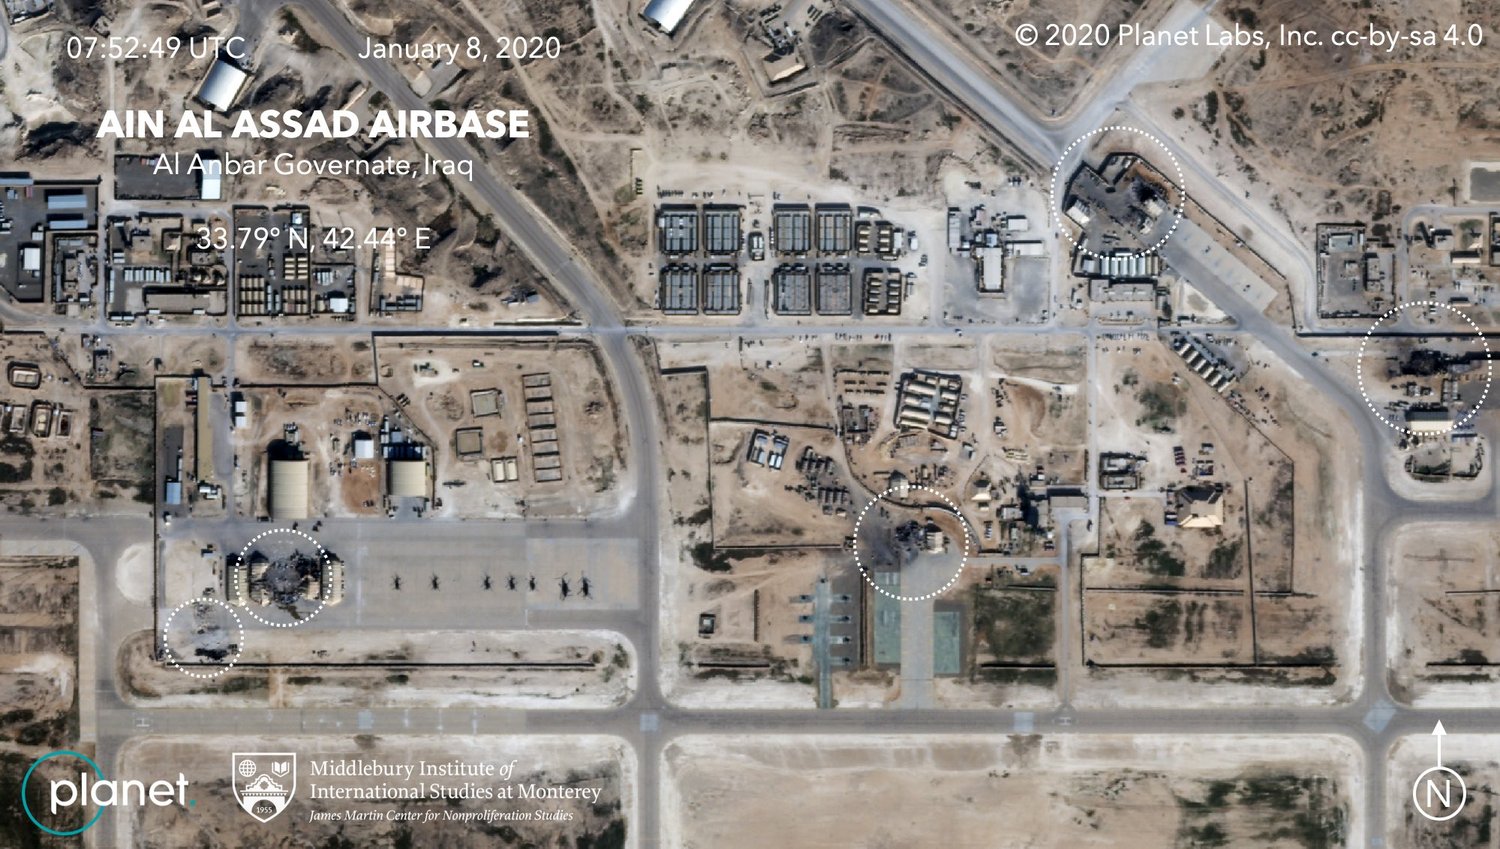 צילום אווירי של הפגיעות בבסיס האמריקאי בעין אל אסד שהותקף על ידי אירן